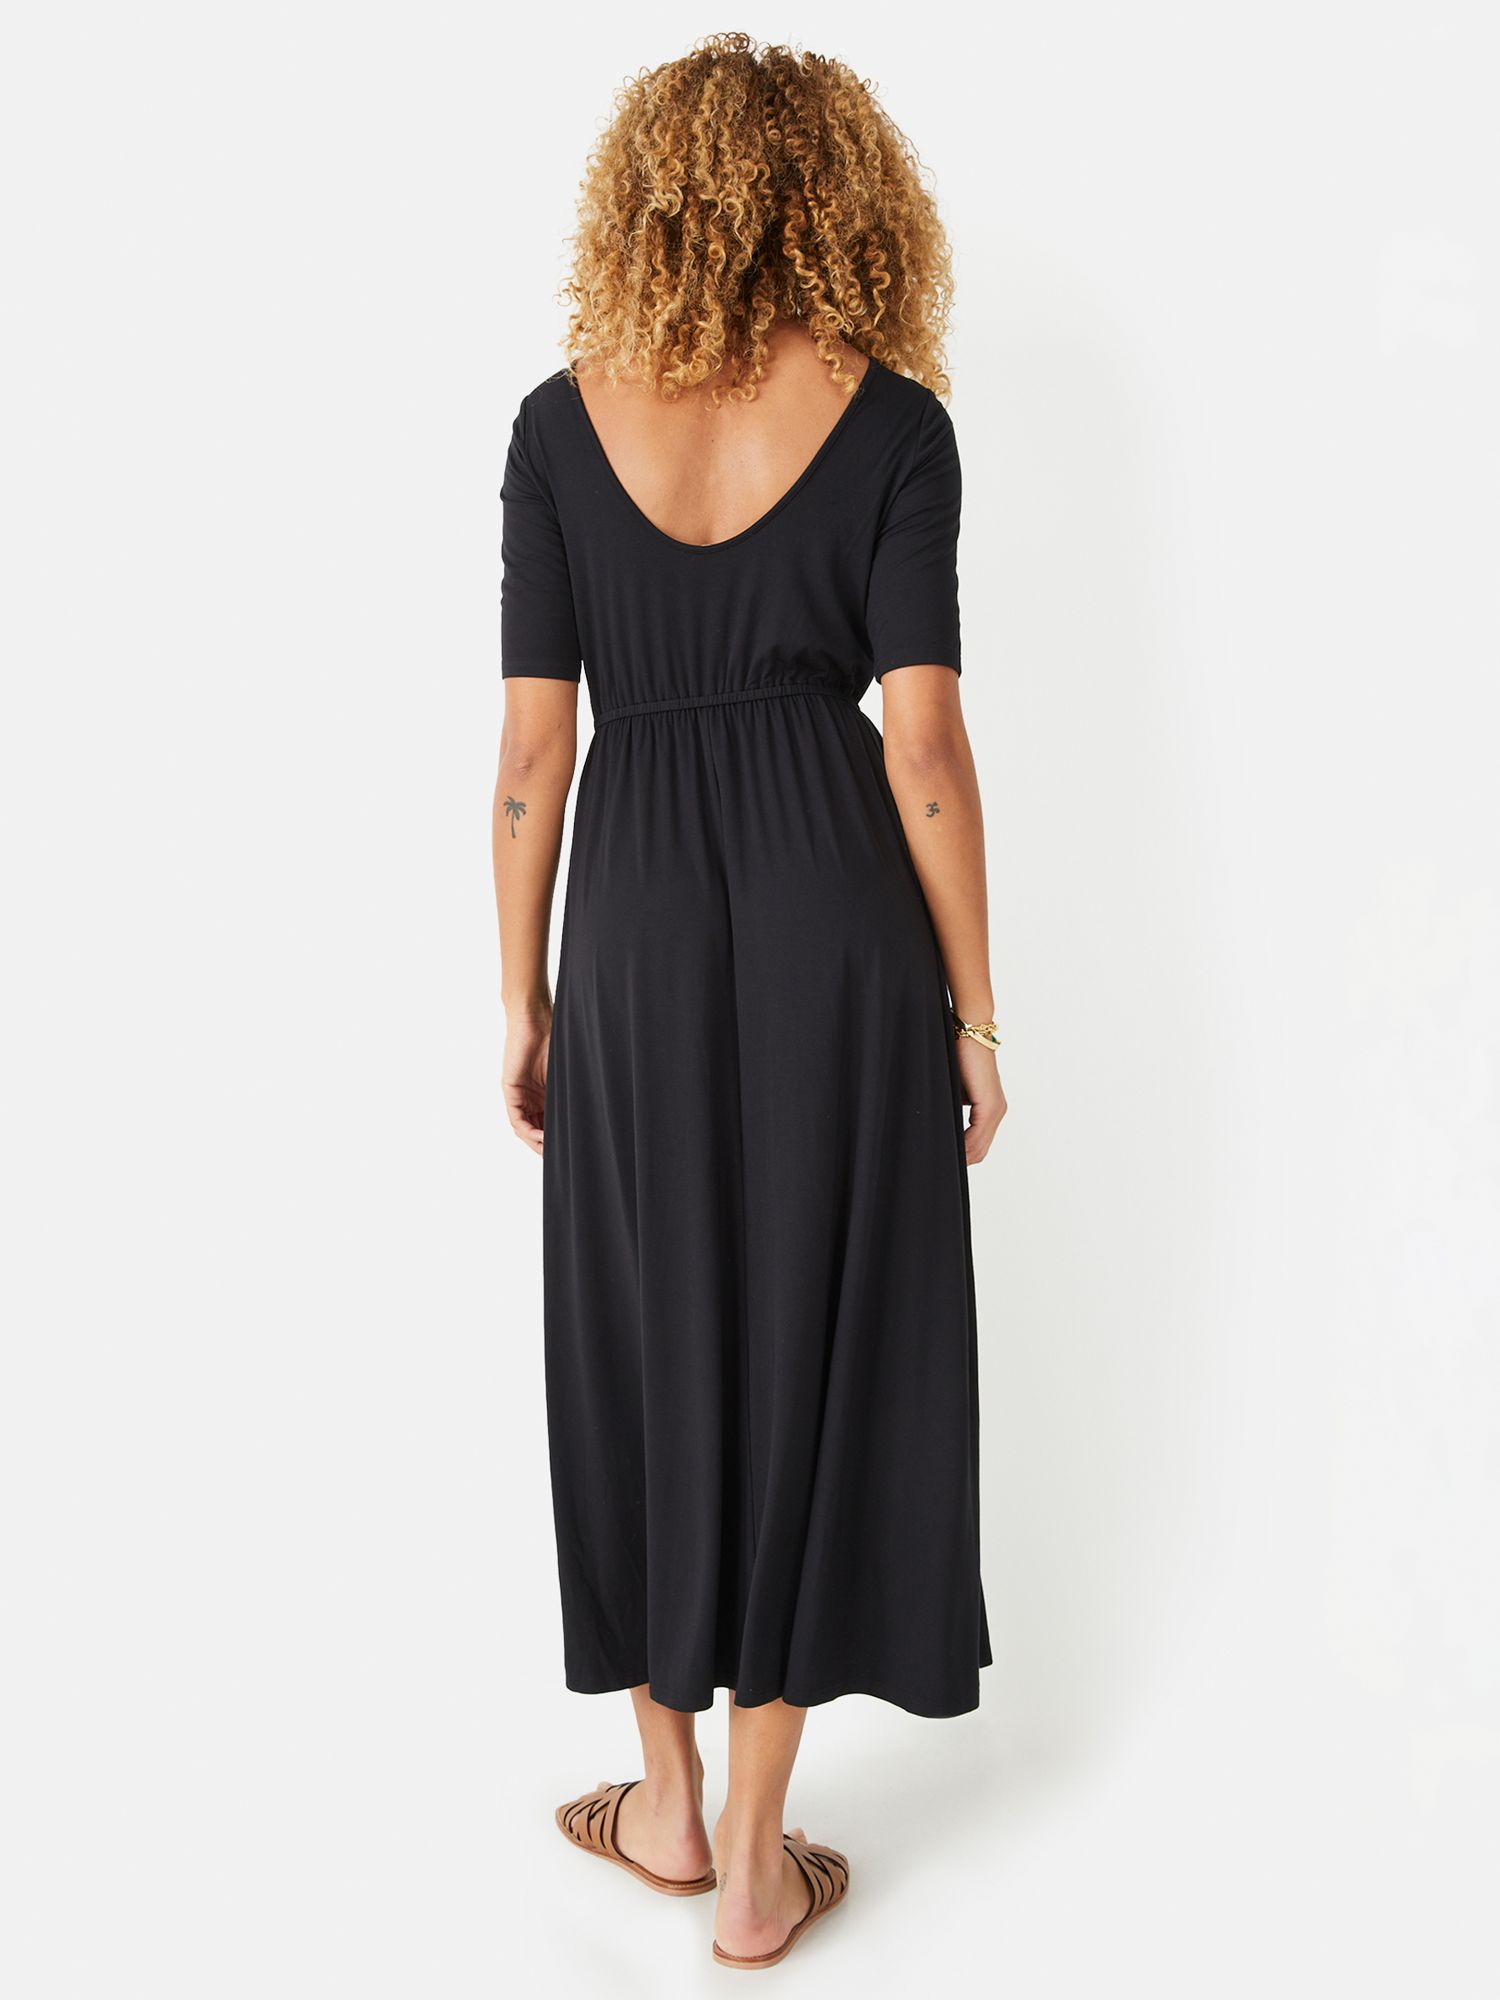 HUSH Elisa Plain Jersey Midi Dress, Black, 4